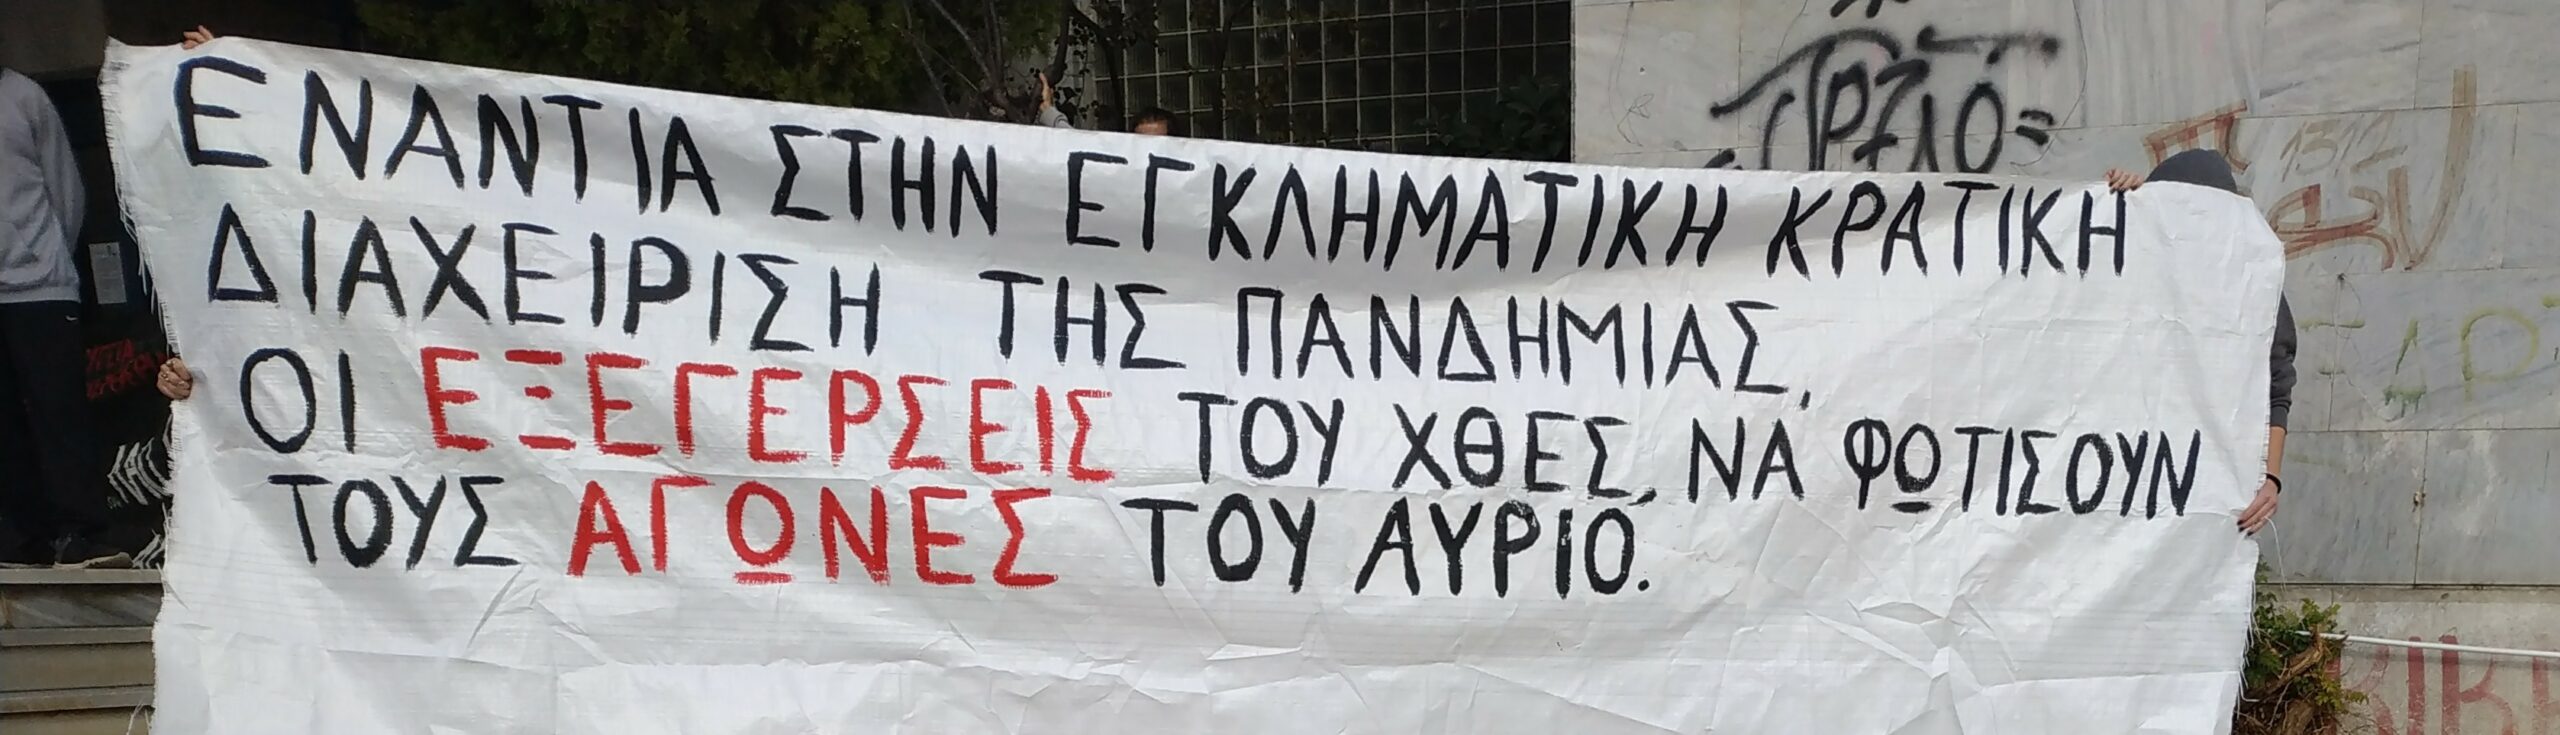 Διασυλλογική ανακοίνωση για το Πολυτεχνείο από Θεσσαλονίκη